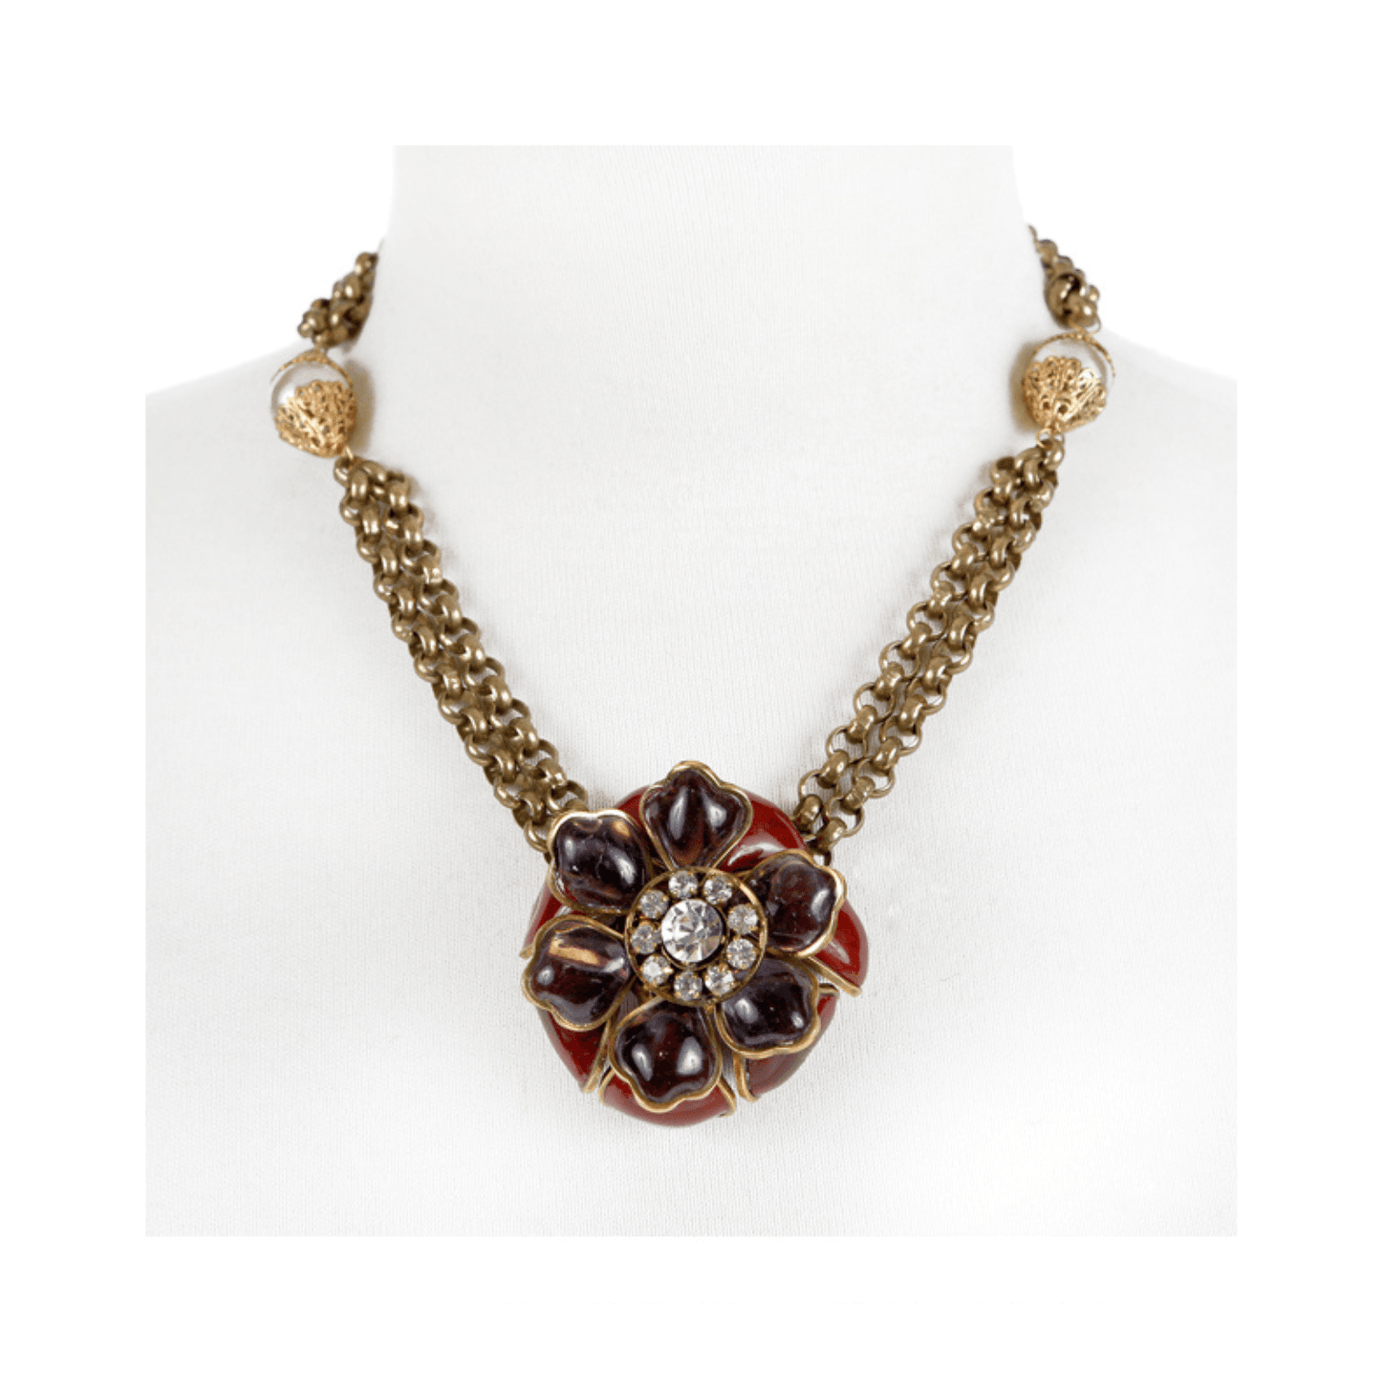 Chanel Gripoix Camellia Pendant Necklace - Only Authentics